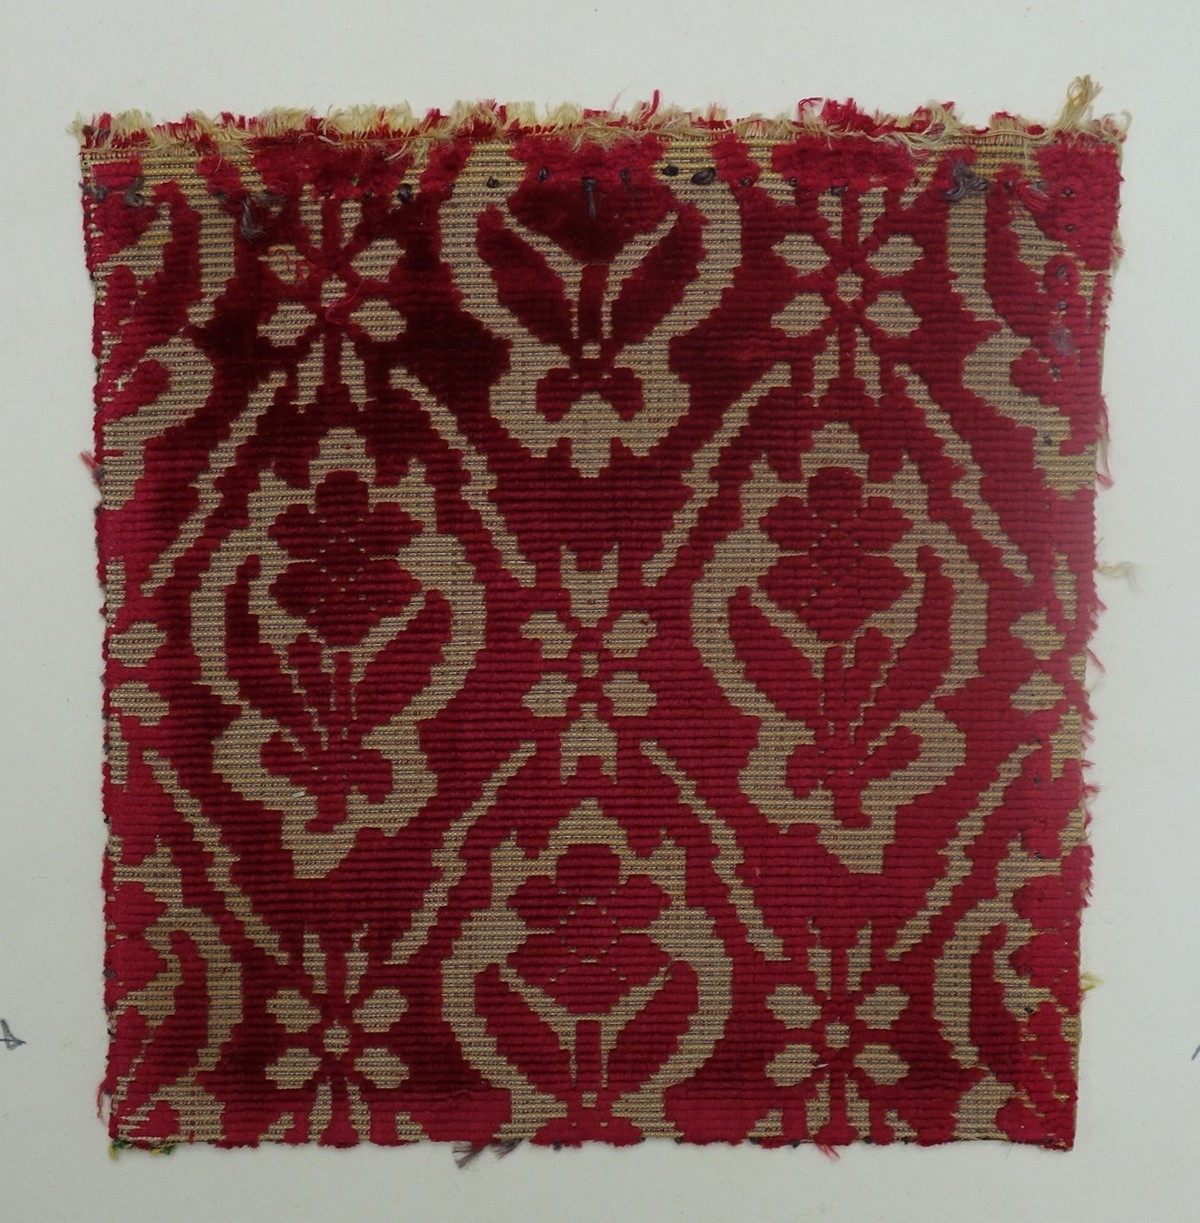 Voided velvet in silk and linen. European, 17th century.